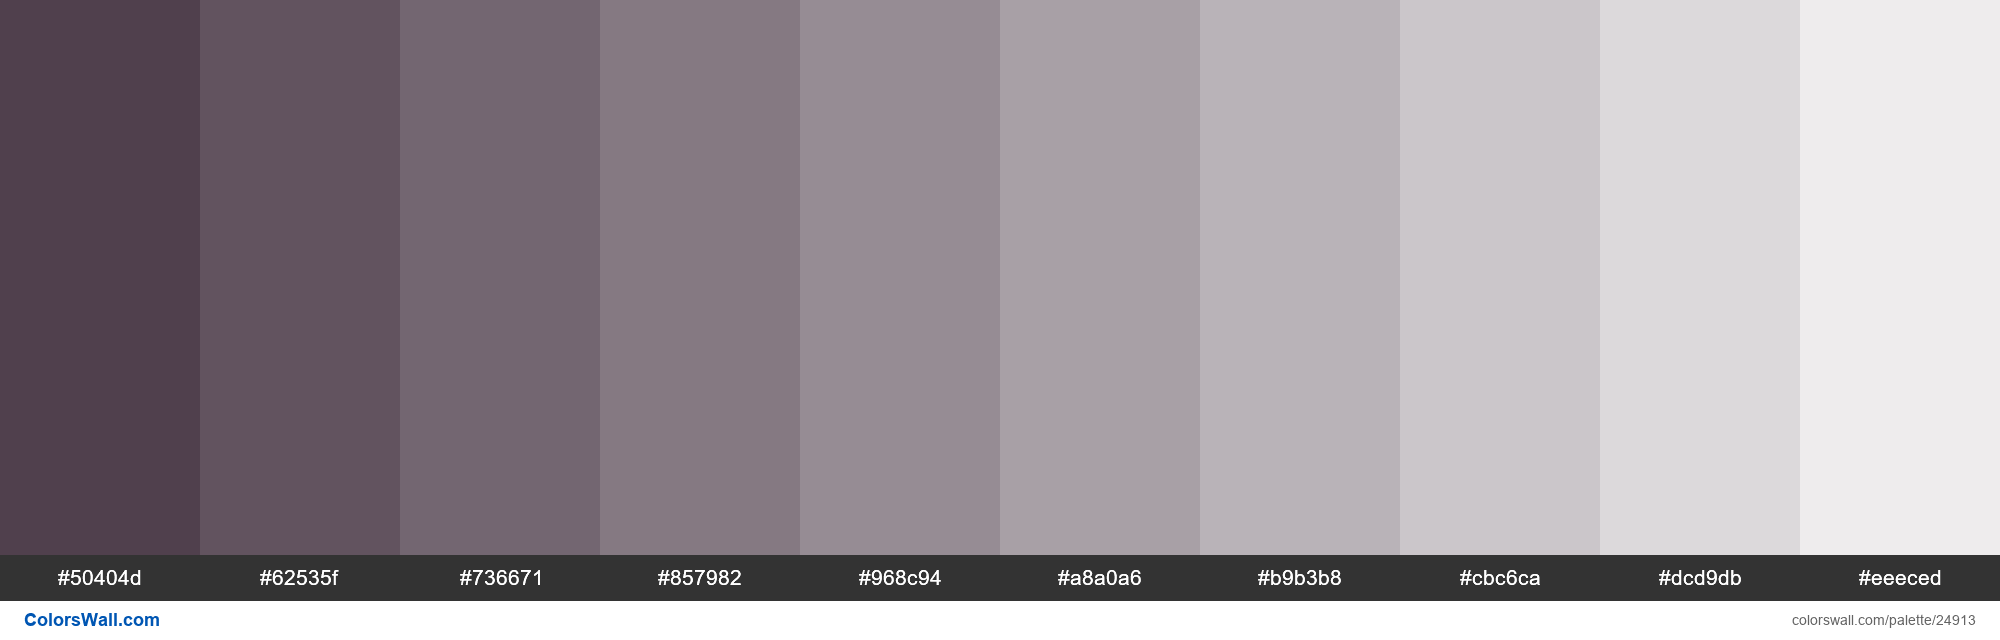 Mauve Grey color hex code is #B1A7AD